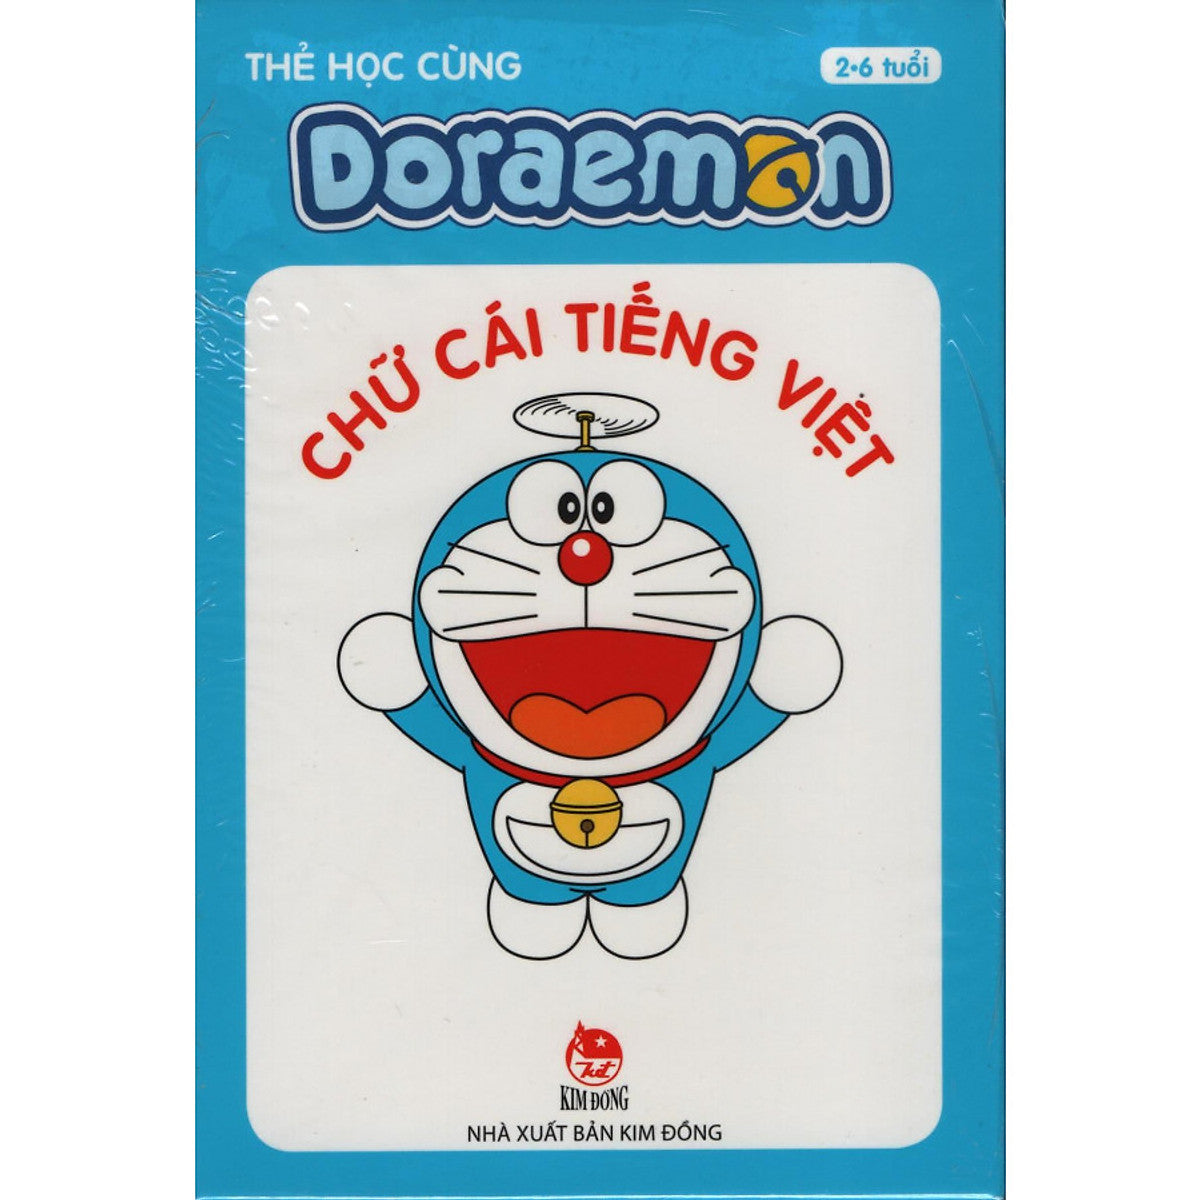 Thẻ Học Cùng Doraemon Chữ Cái Tiếng Việt